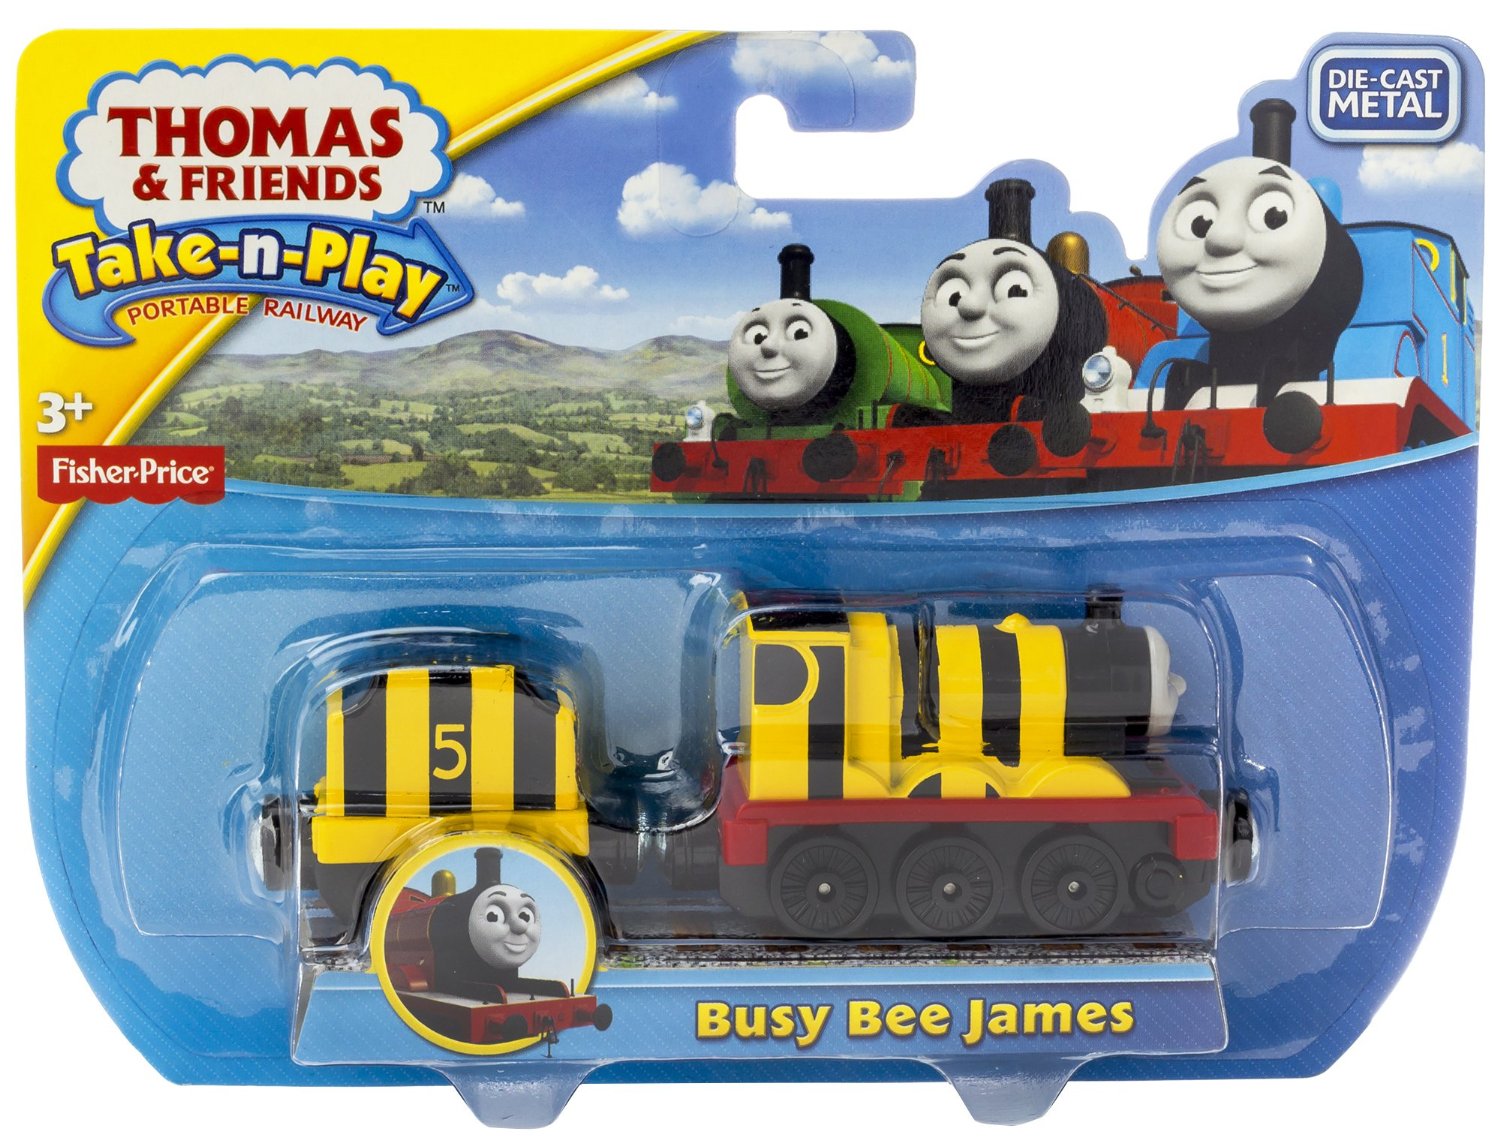 Имена паровозиков. Thomas and friends Thomas and Джемйс игрушка. Thomas and friends James busy Bee. Имена паровозиков из Томаса.